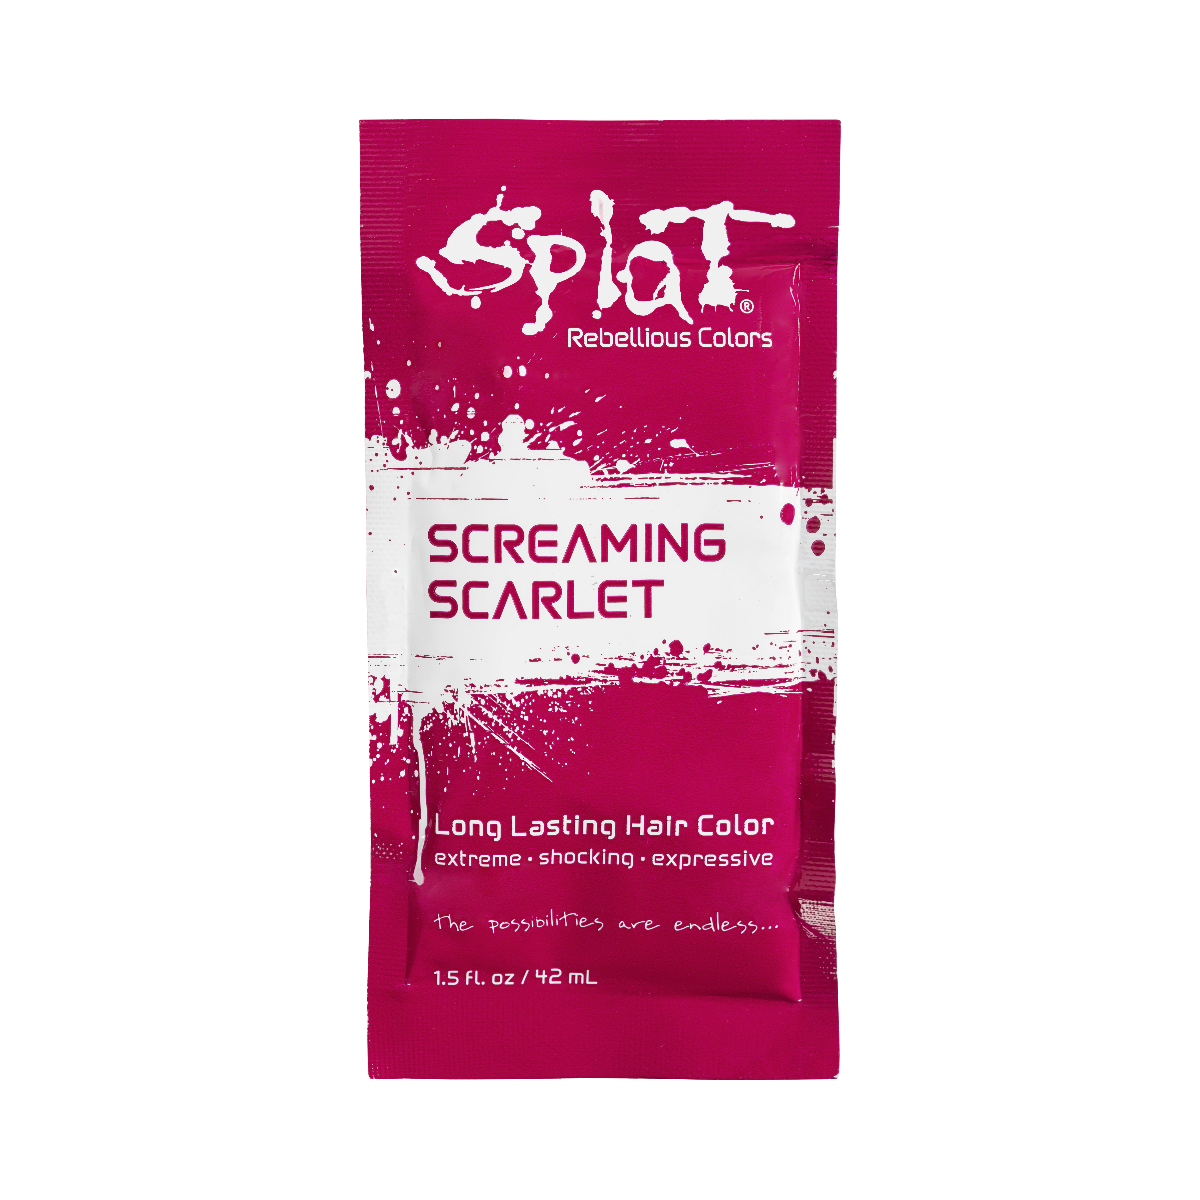 Splat Hair Dye Original Singles Foil Packet in Screaming Scarlet Red Semi-Permanent Hair Dye